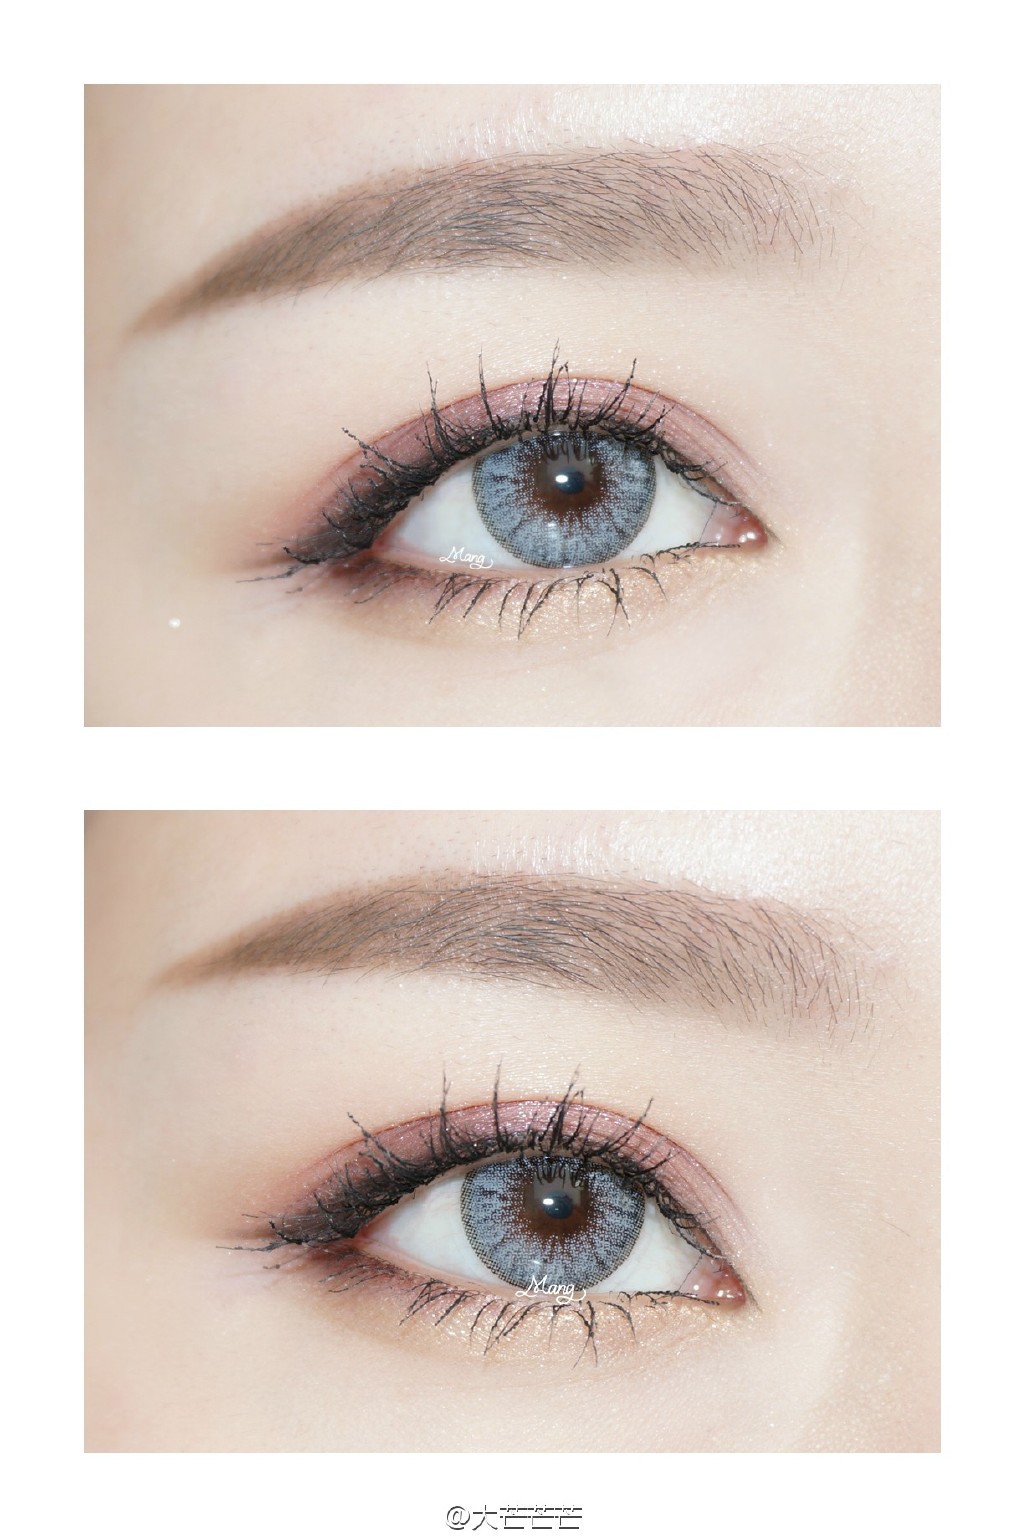 YSL黑鸦片眼影盘两种画法&常用化妆刷的推荐和用法